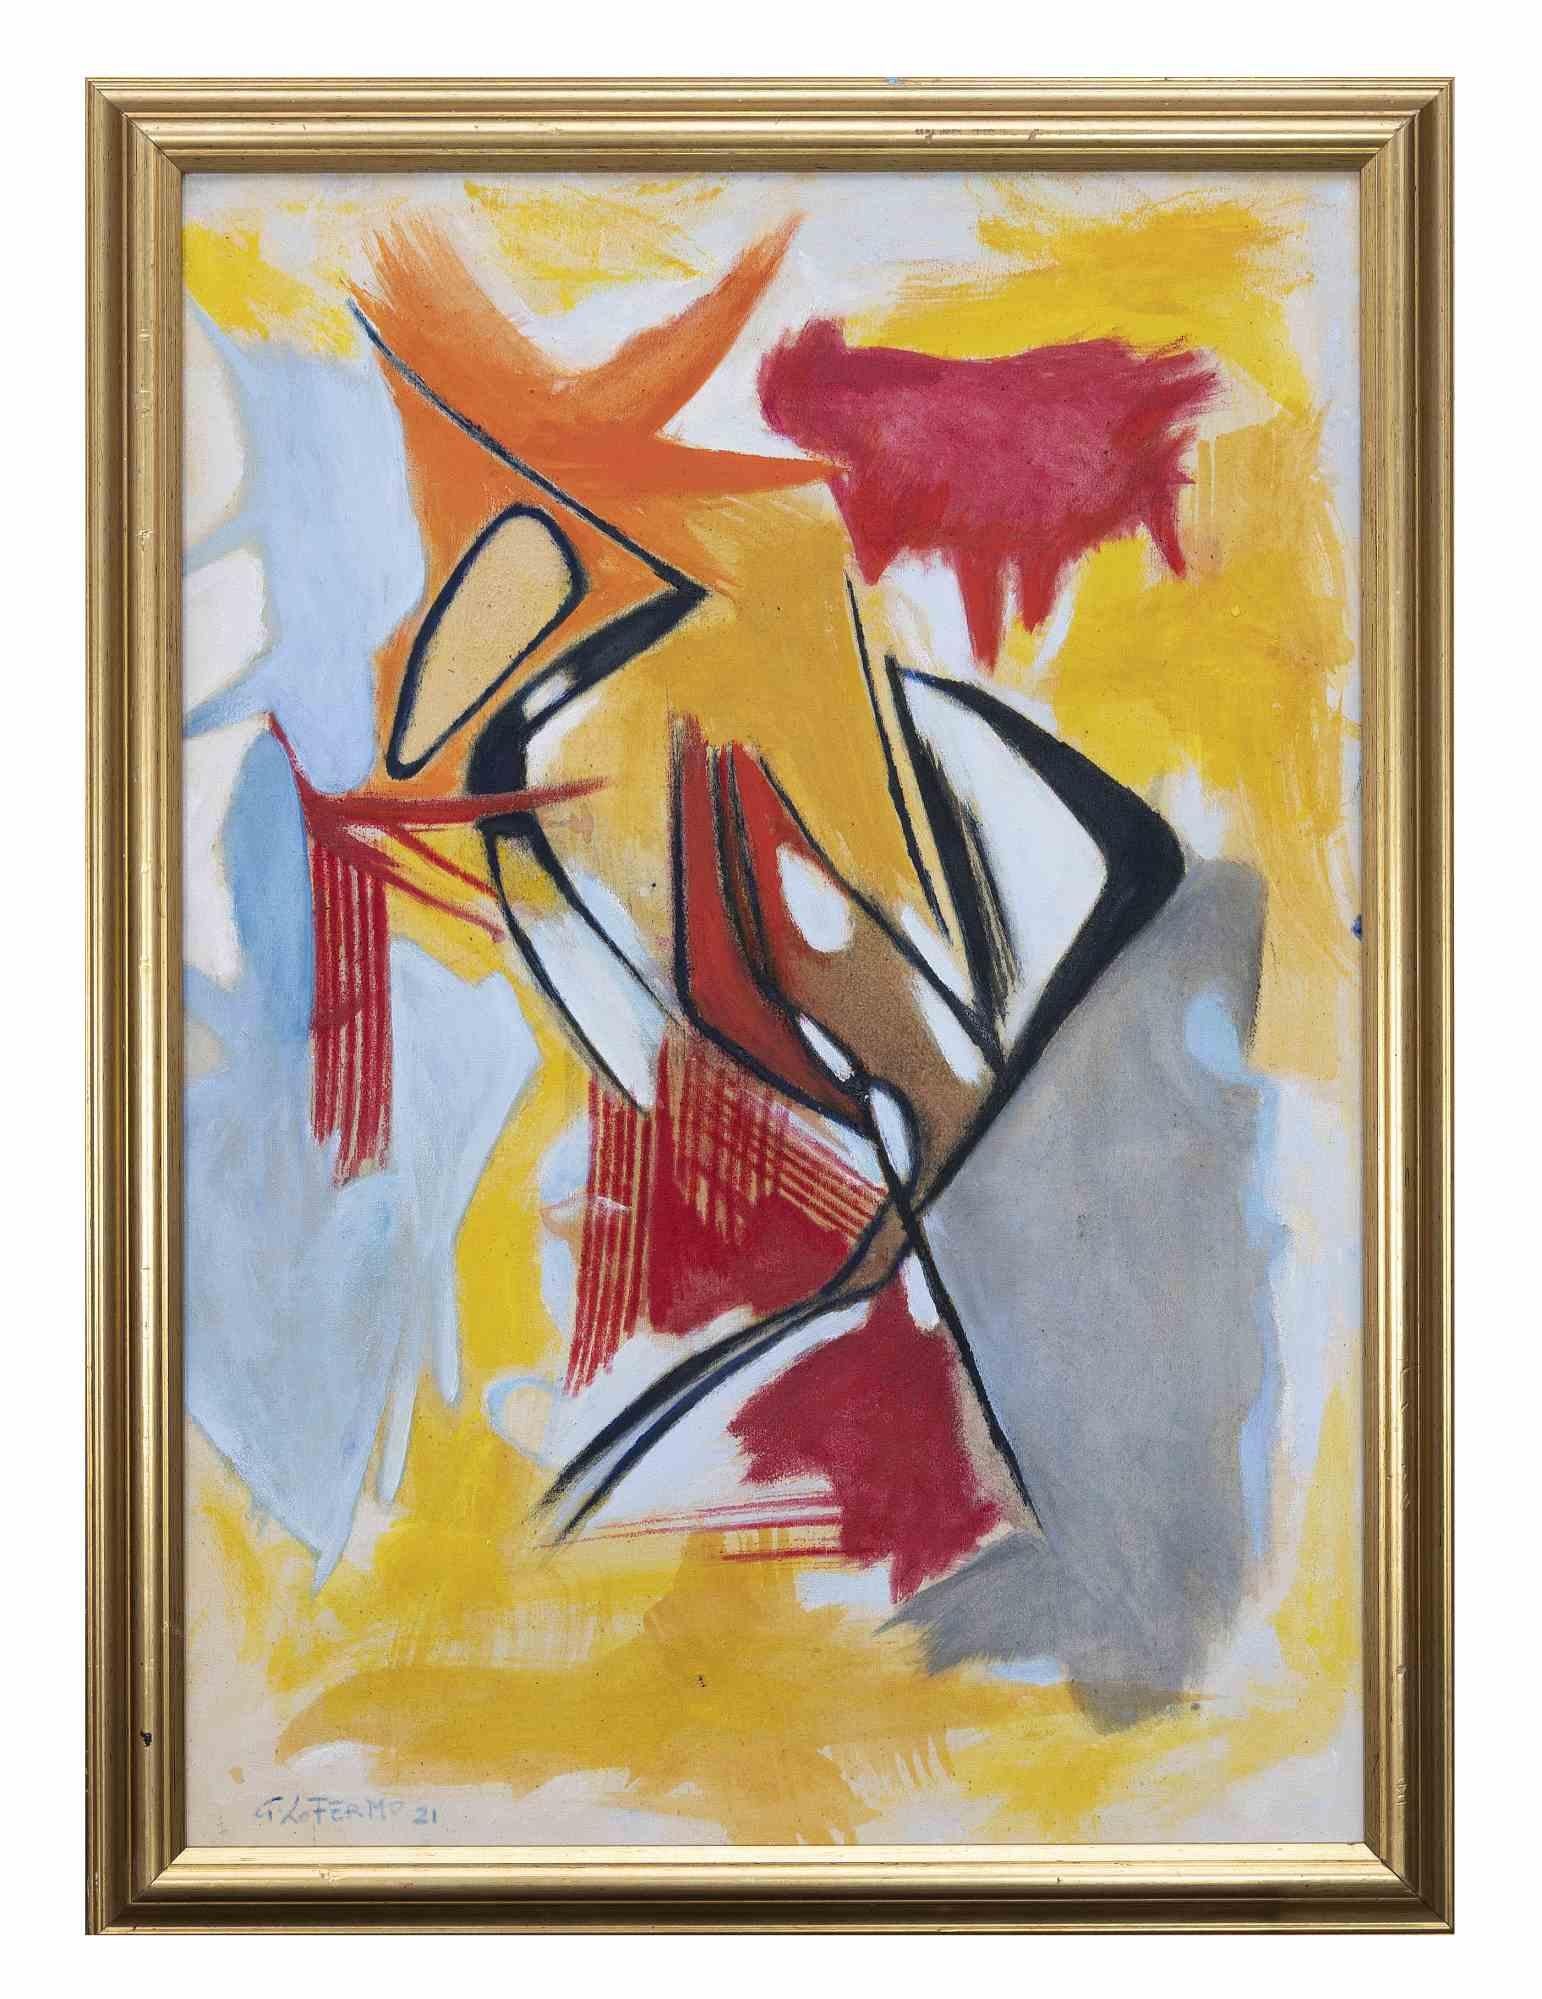 Abstract Composition ist ein originales zeitgenössisches Kunstwerk von Giorgio Lo Fermo (geb. 1947) aus dem Jahr 2021.

Original Ölgemälde.

Handsigniert, betitelt und datiert auf der Rückseite der Leinwand.

Handsigniert und datiert in der linken